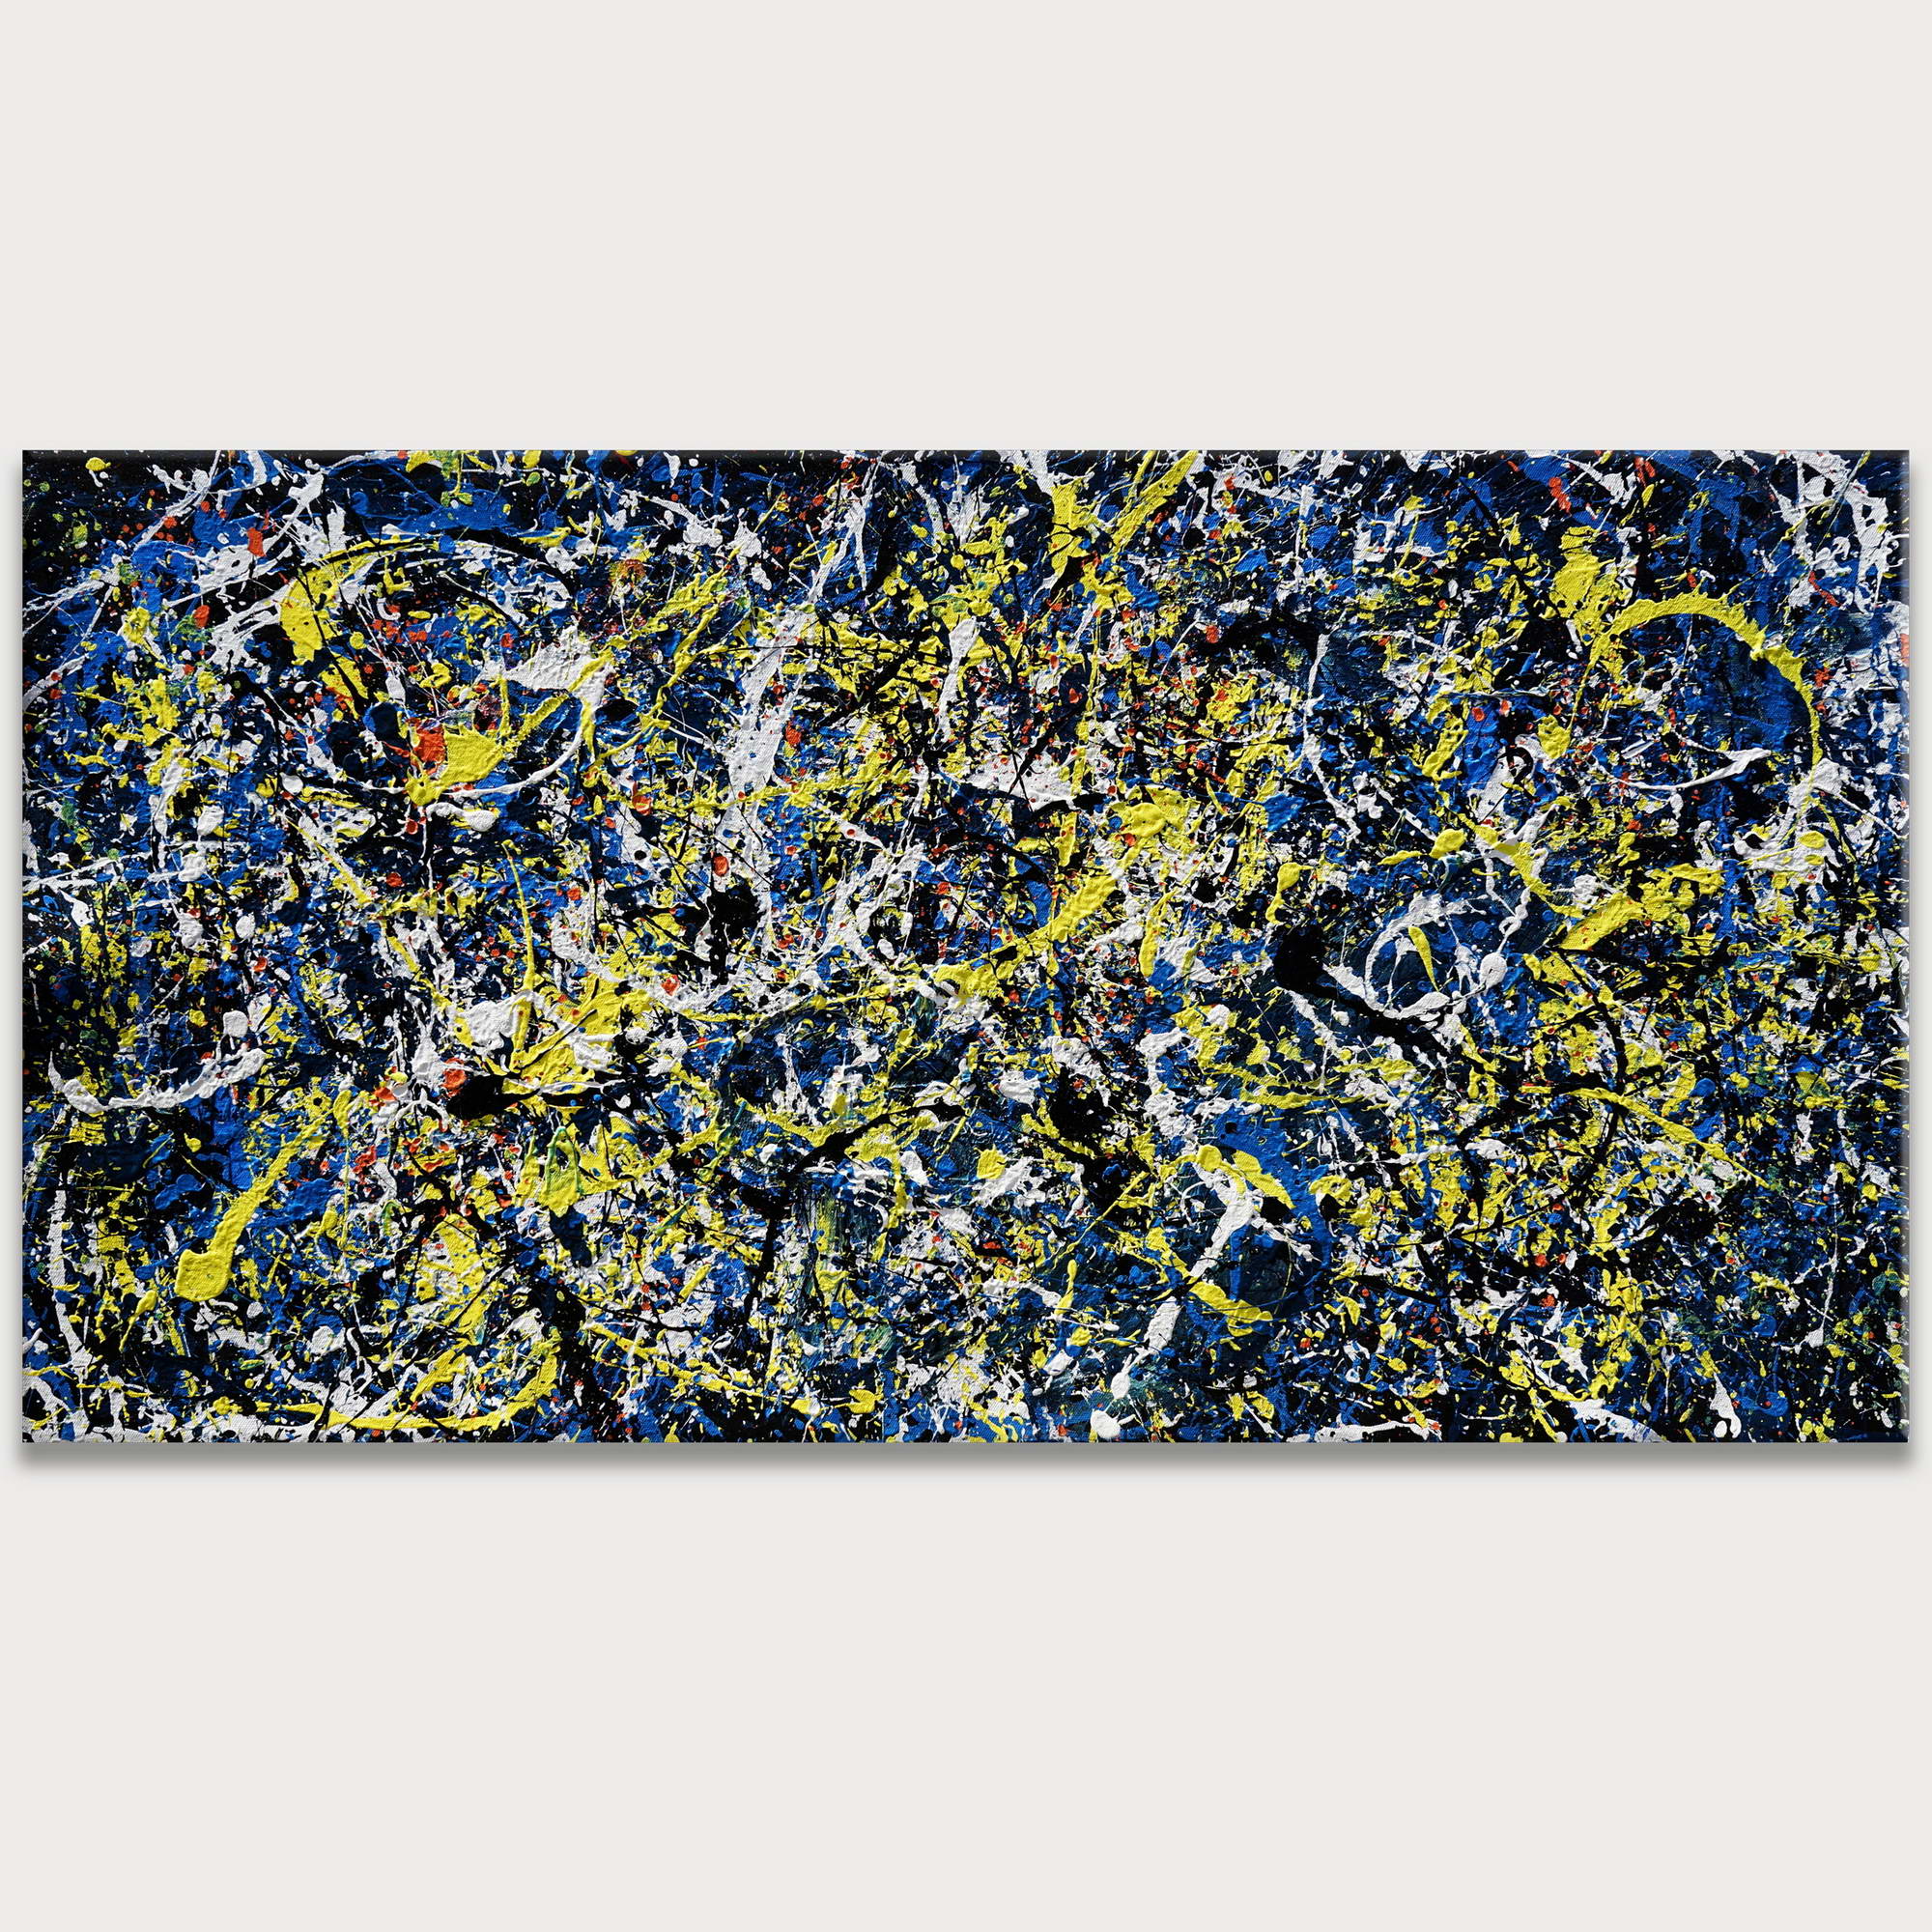 Dipinto a mano Astratto Giallo e Blu stile Pollock 75x150cm